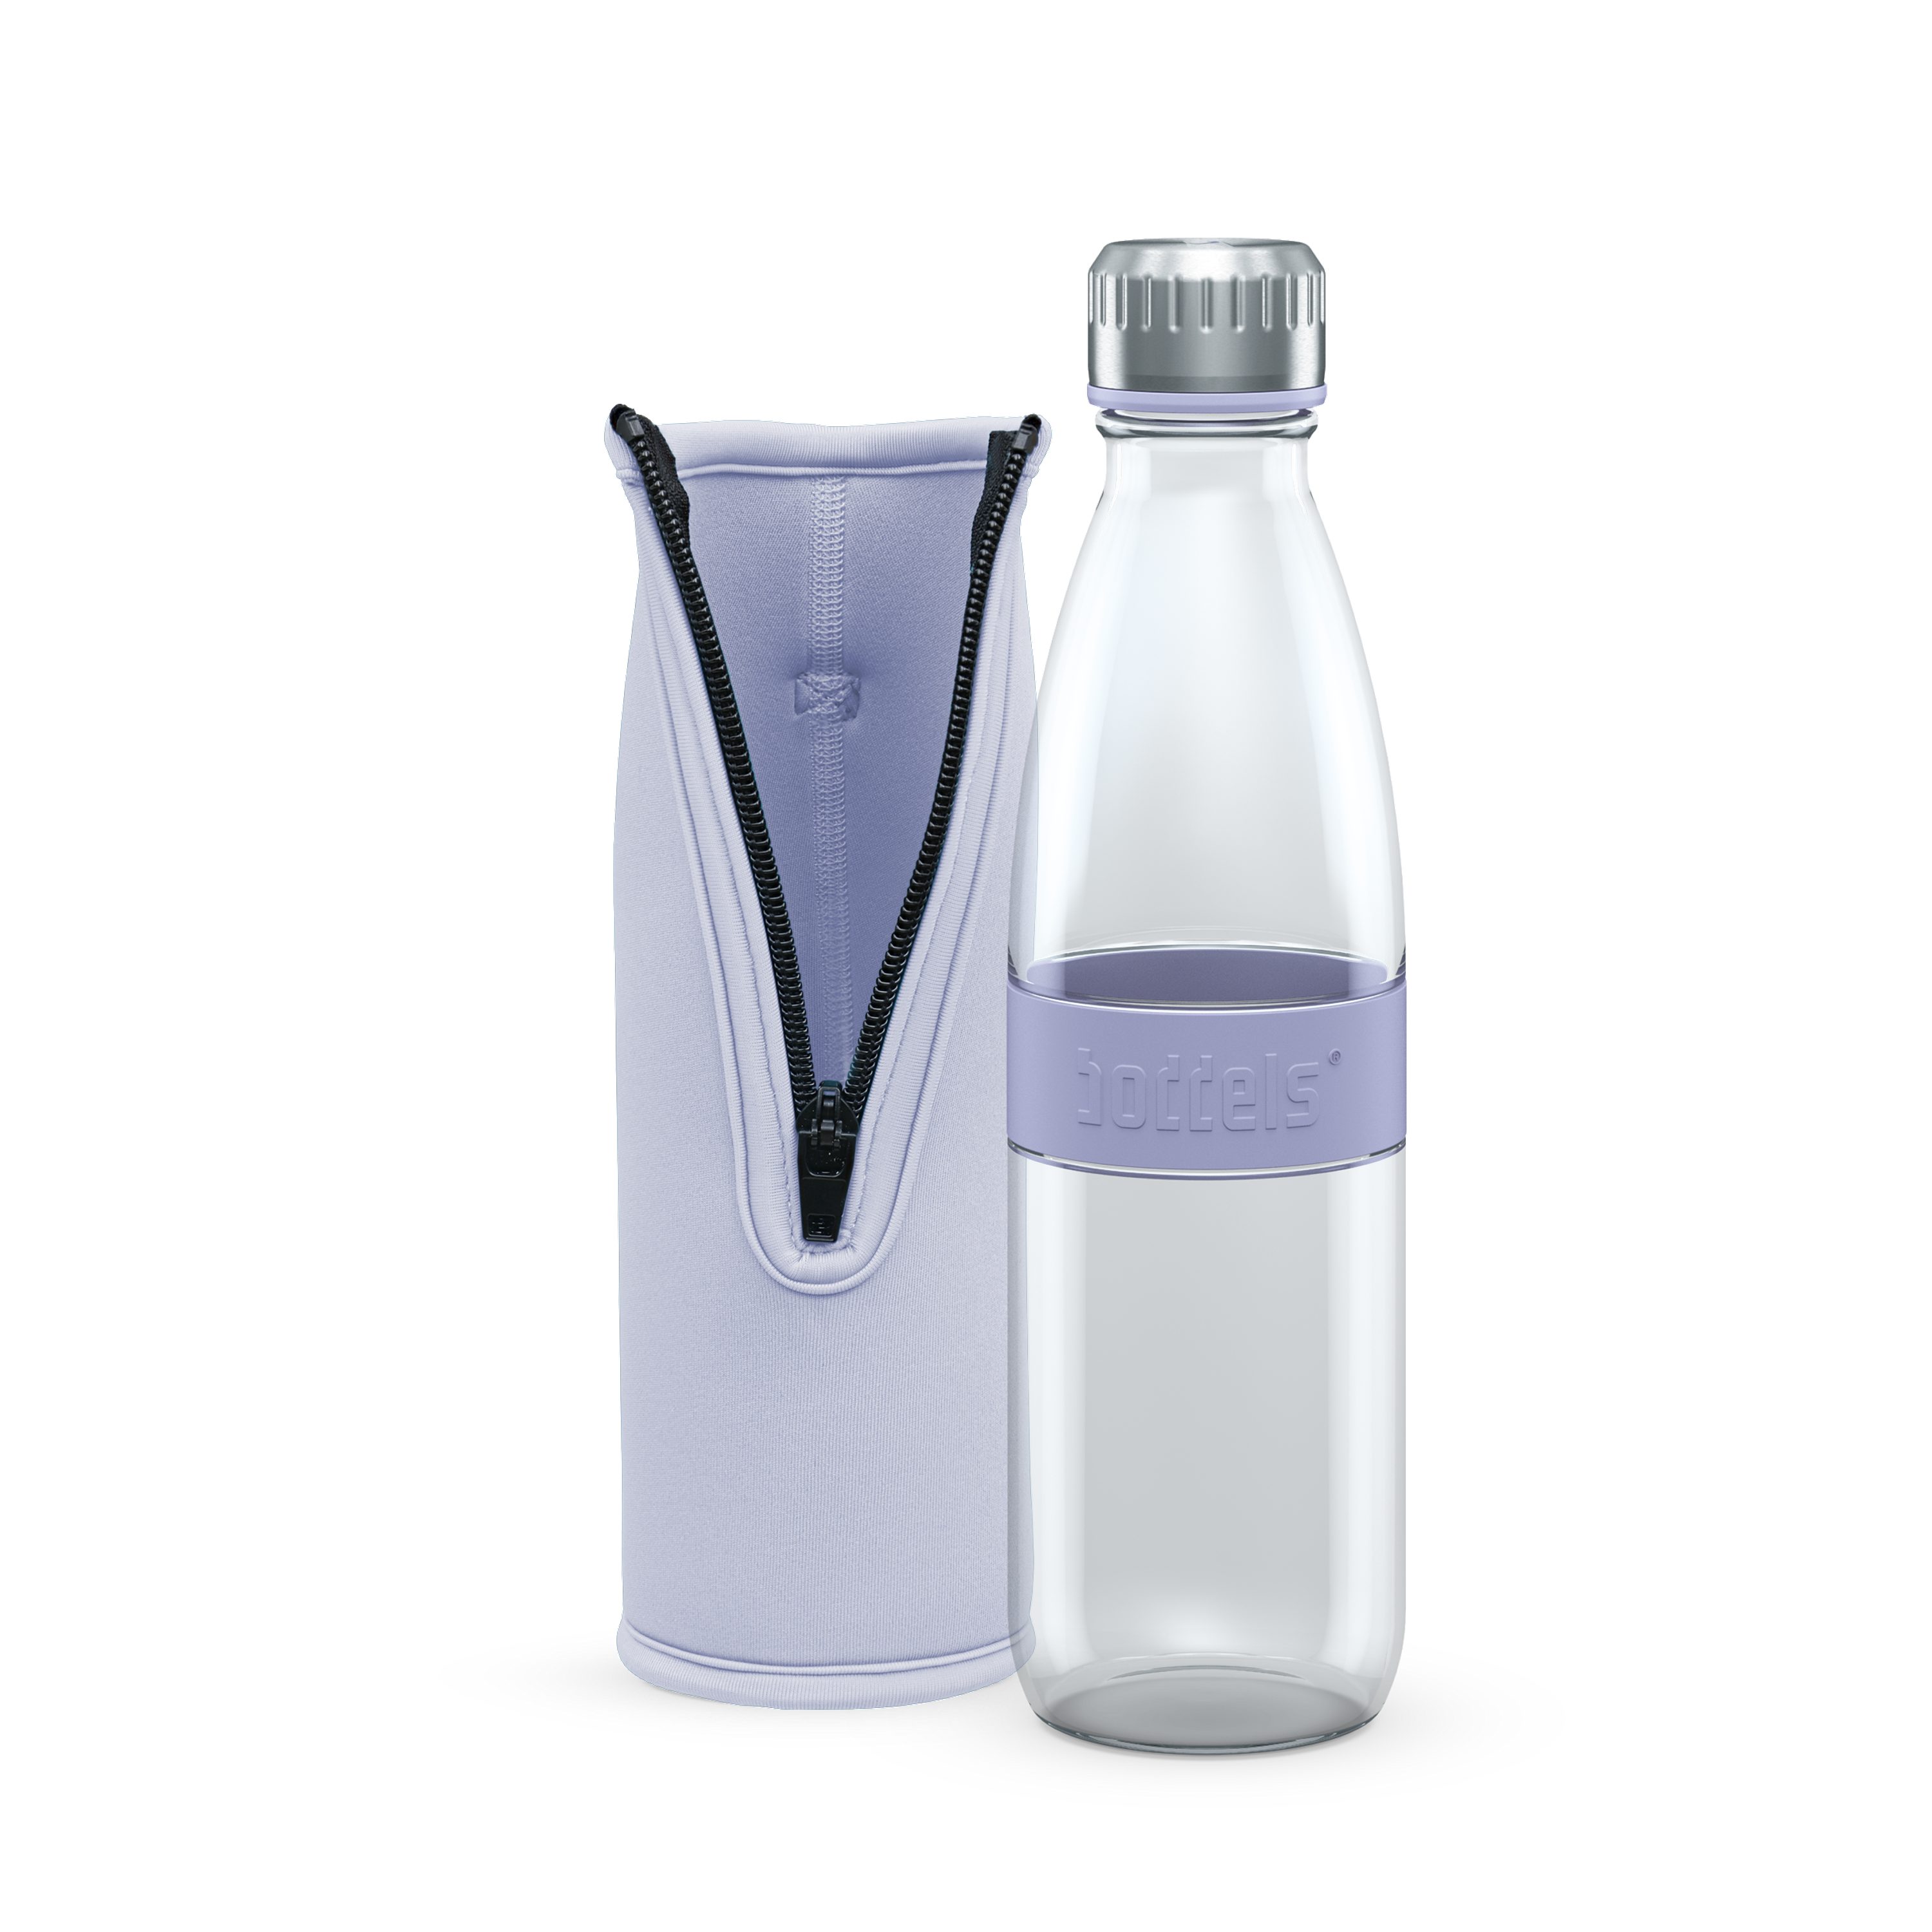 DREE doppelwandig, Flasche boddels auslaufsicher, Glas aus Lavendelblau 650ml, Trinkflasche bruchfest